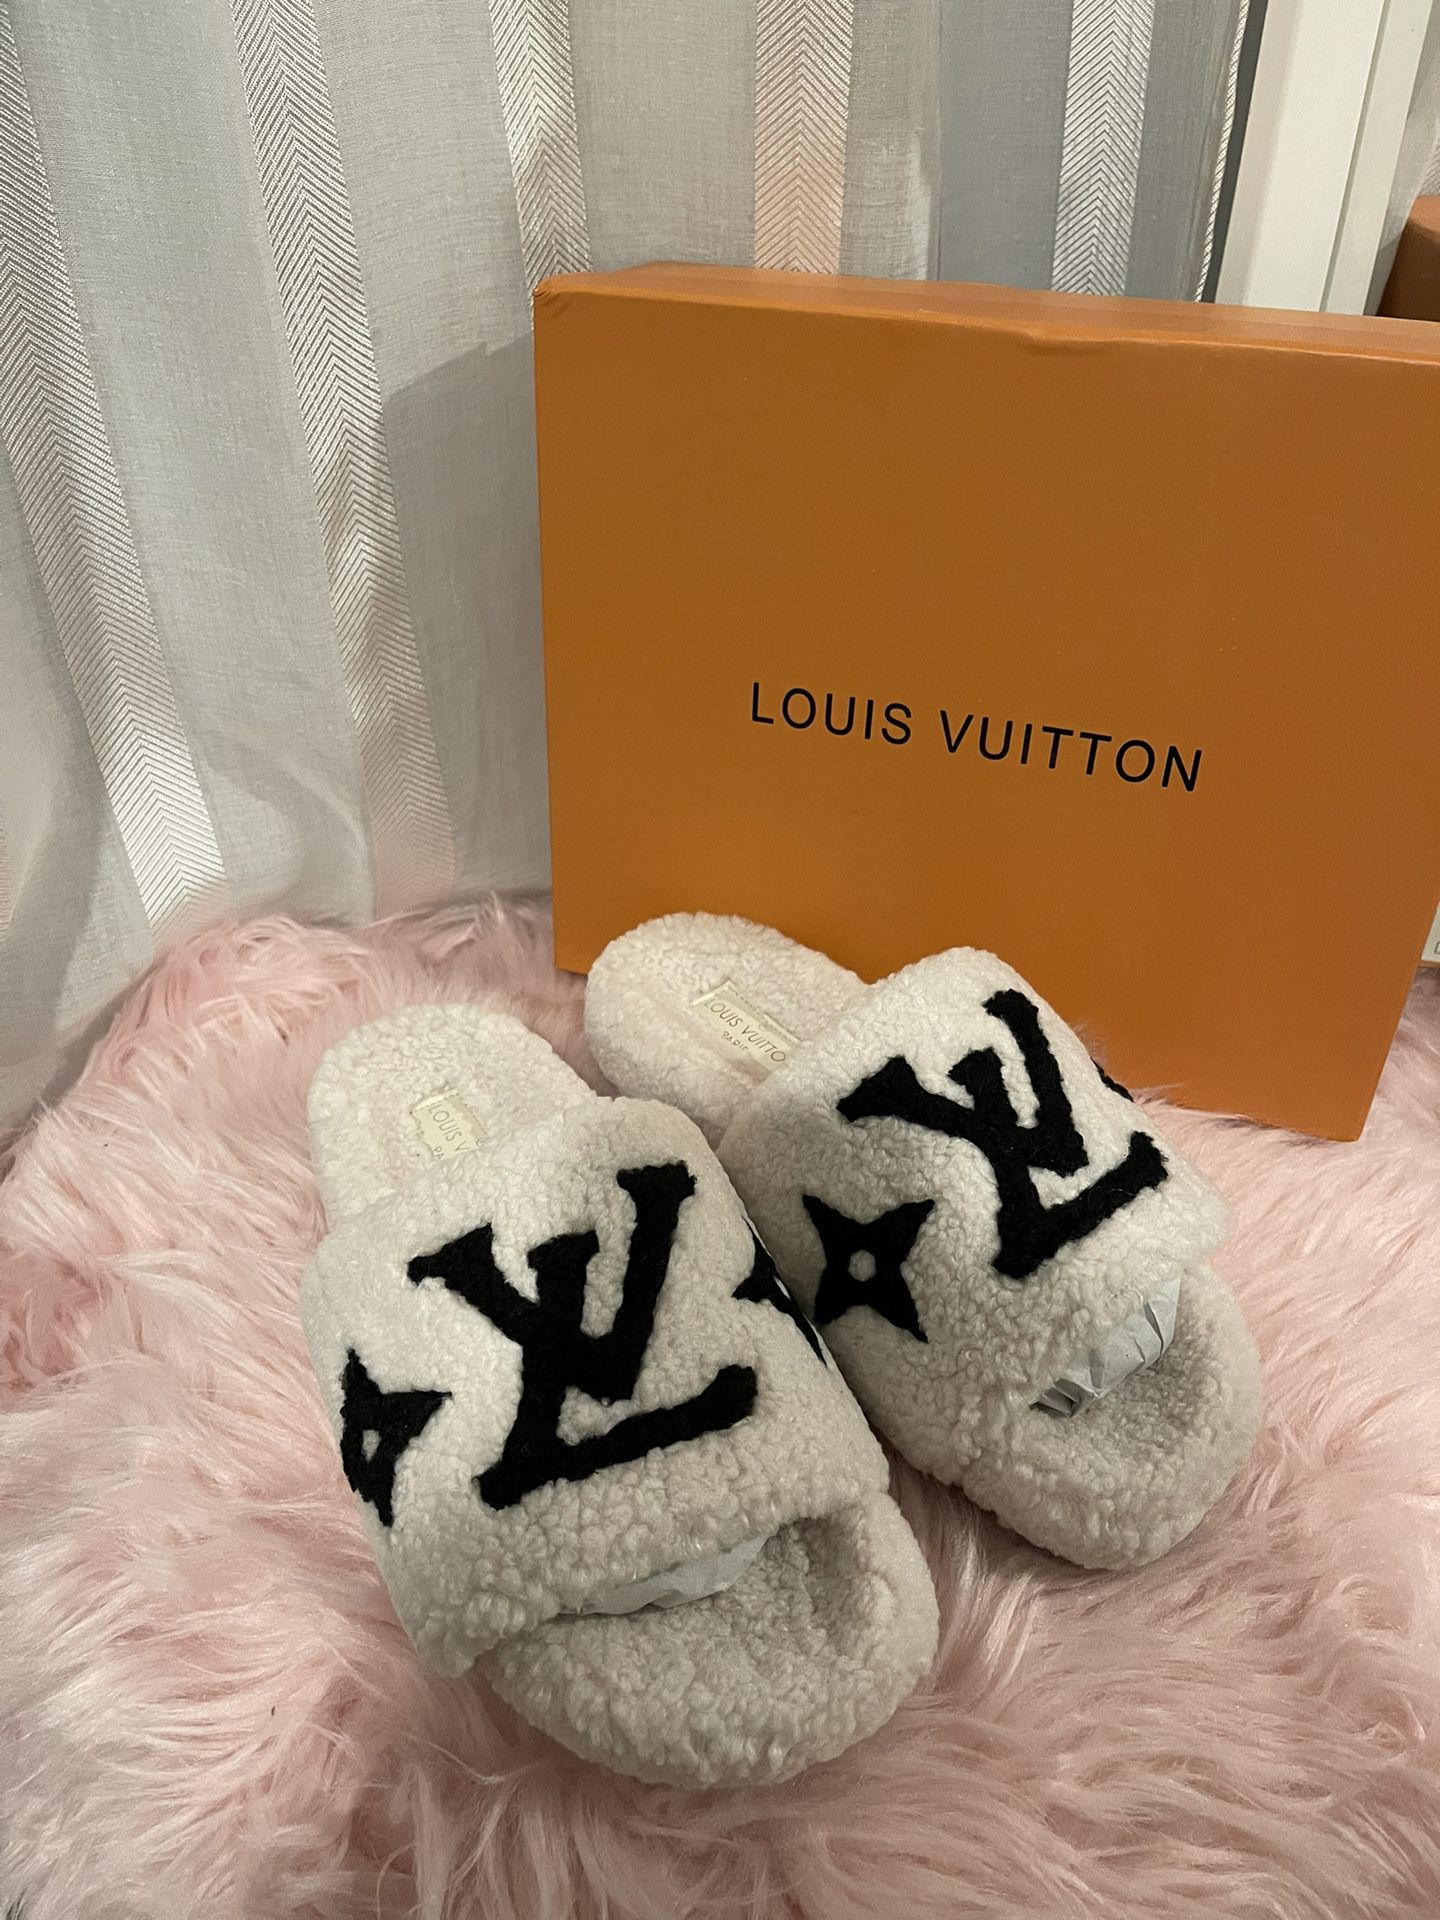 lv white slippers